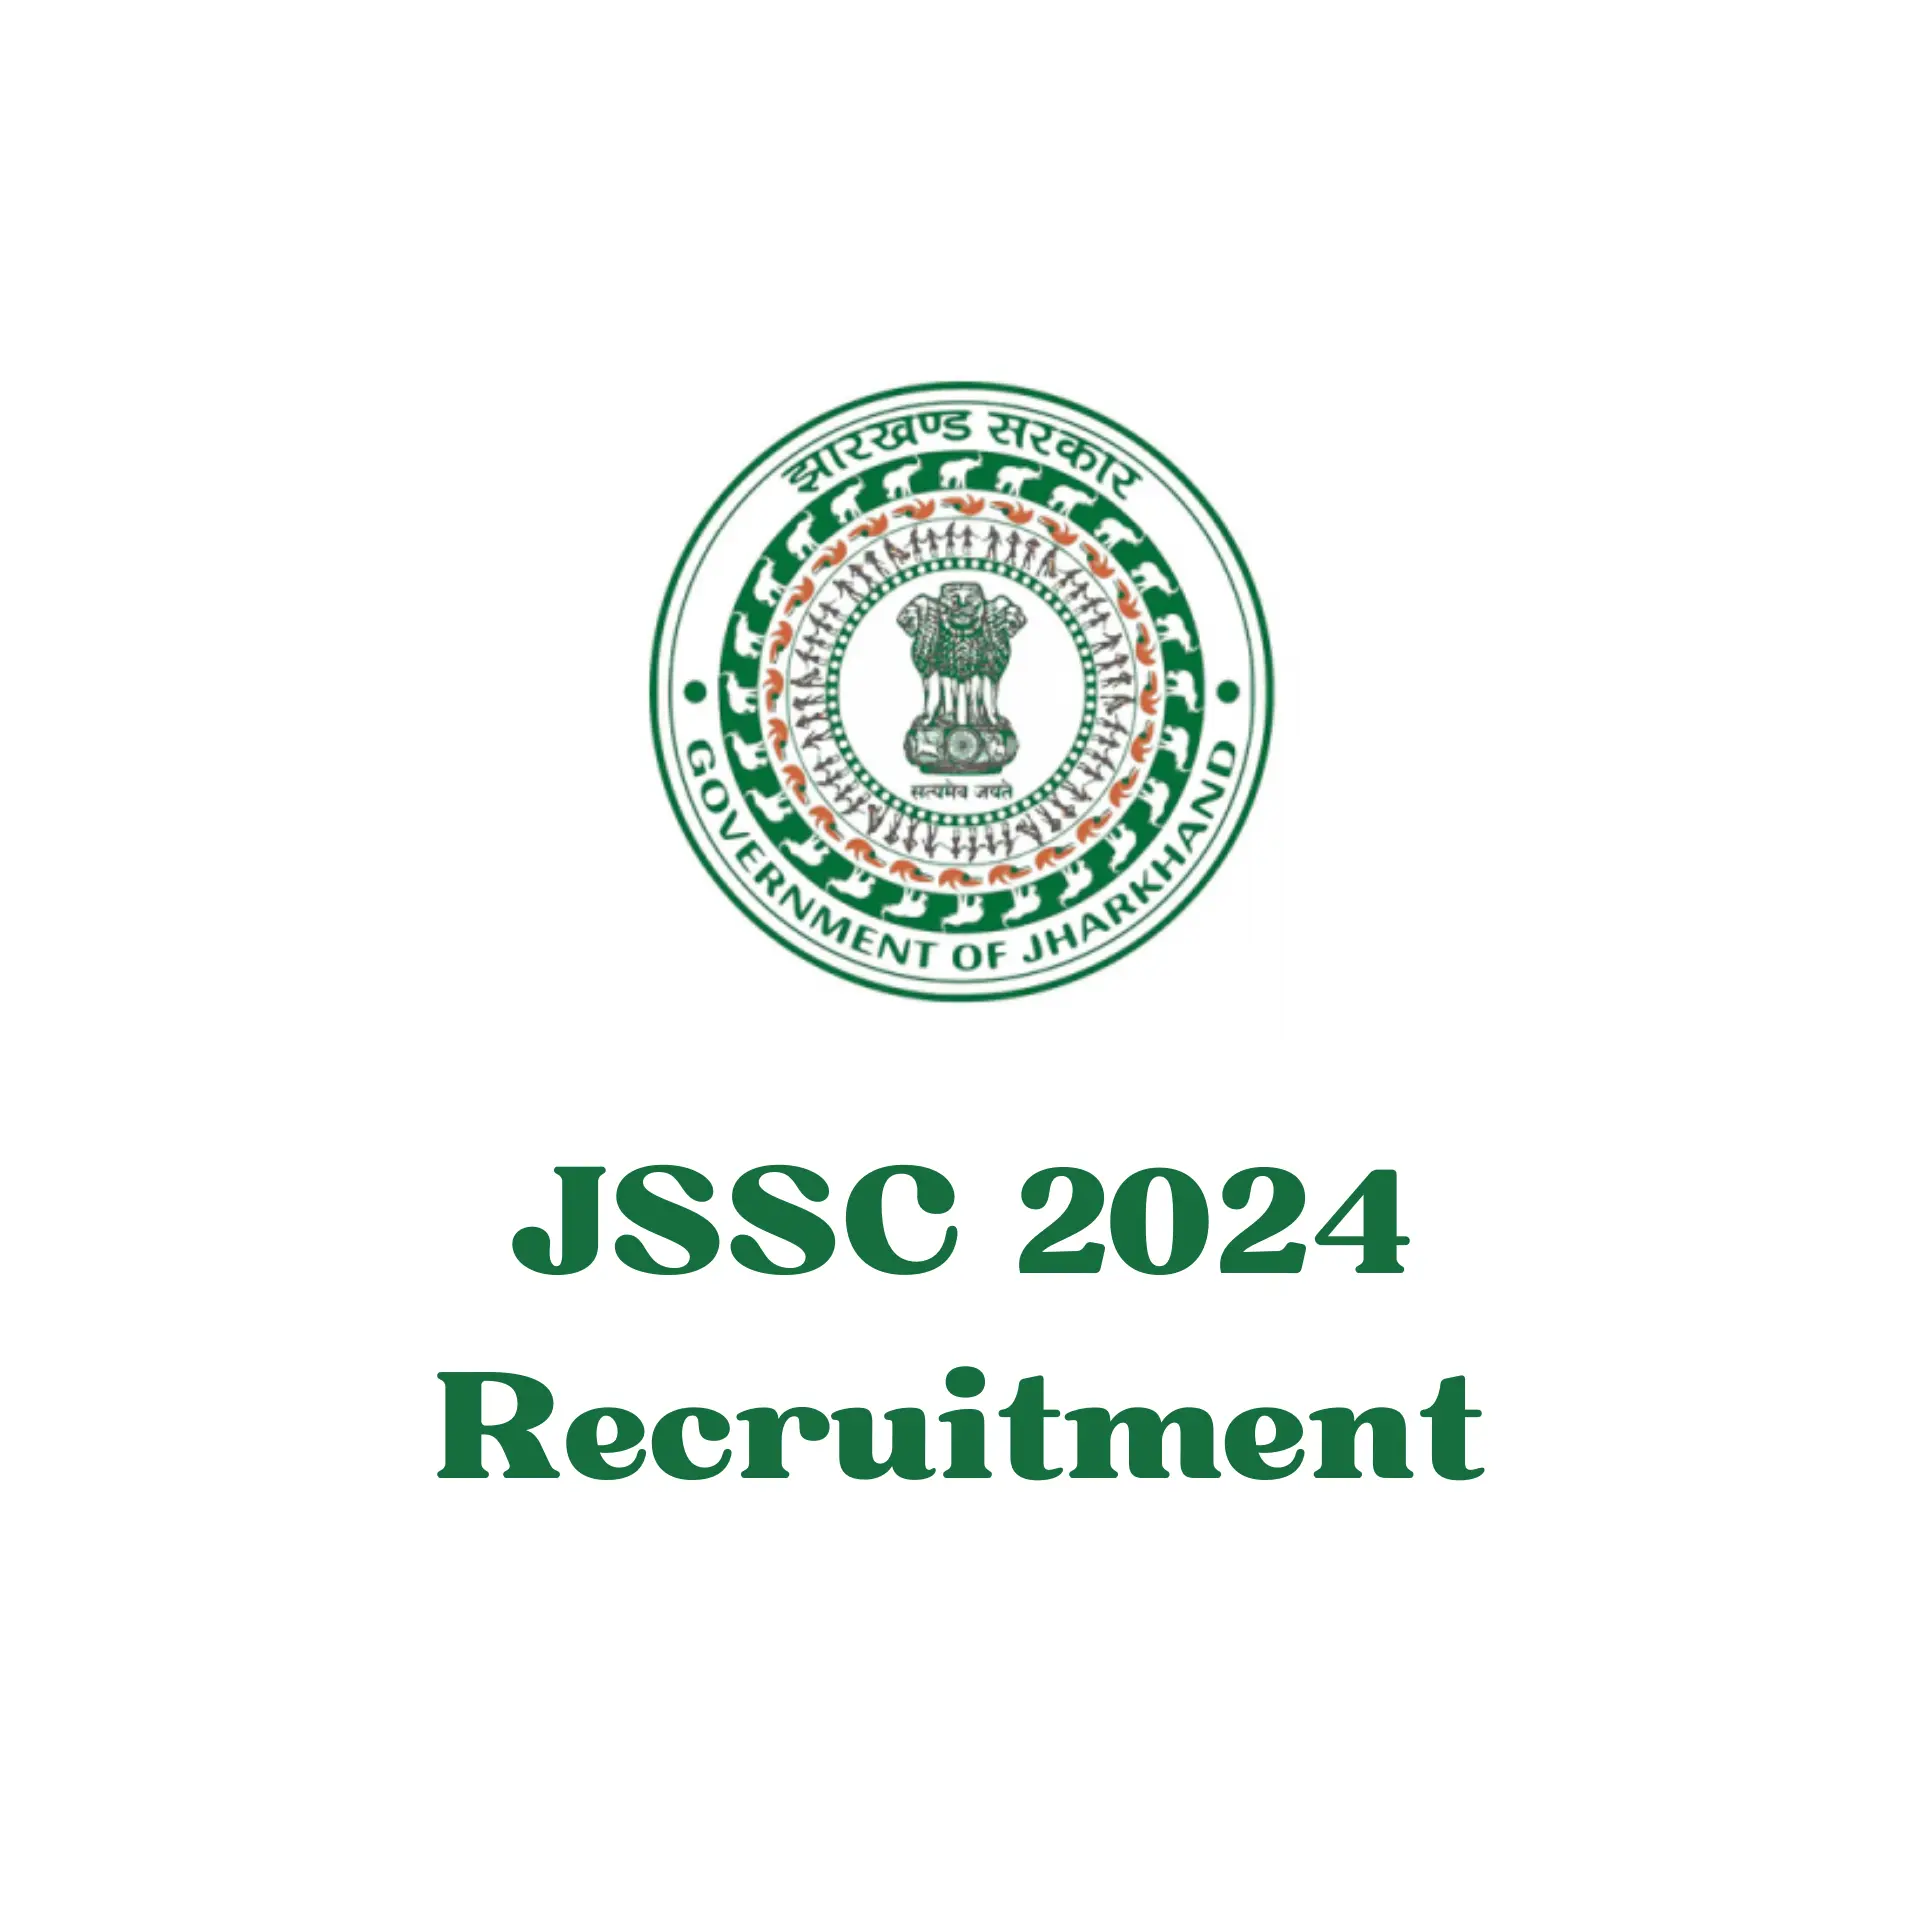 JSSC 2024 Recruitment